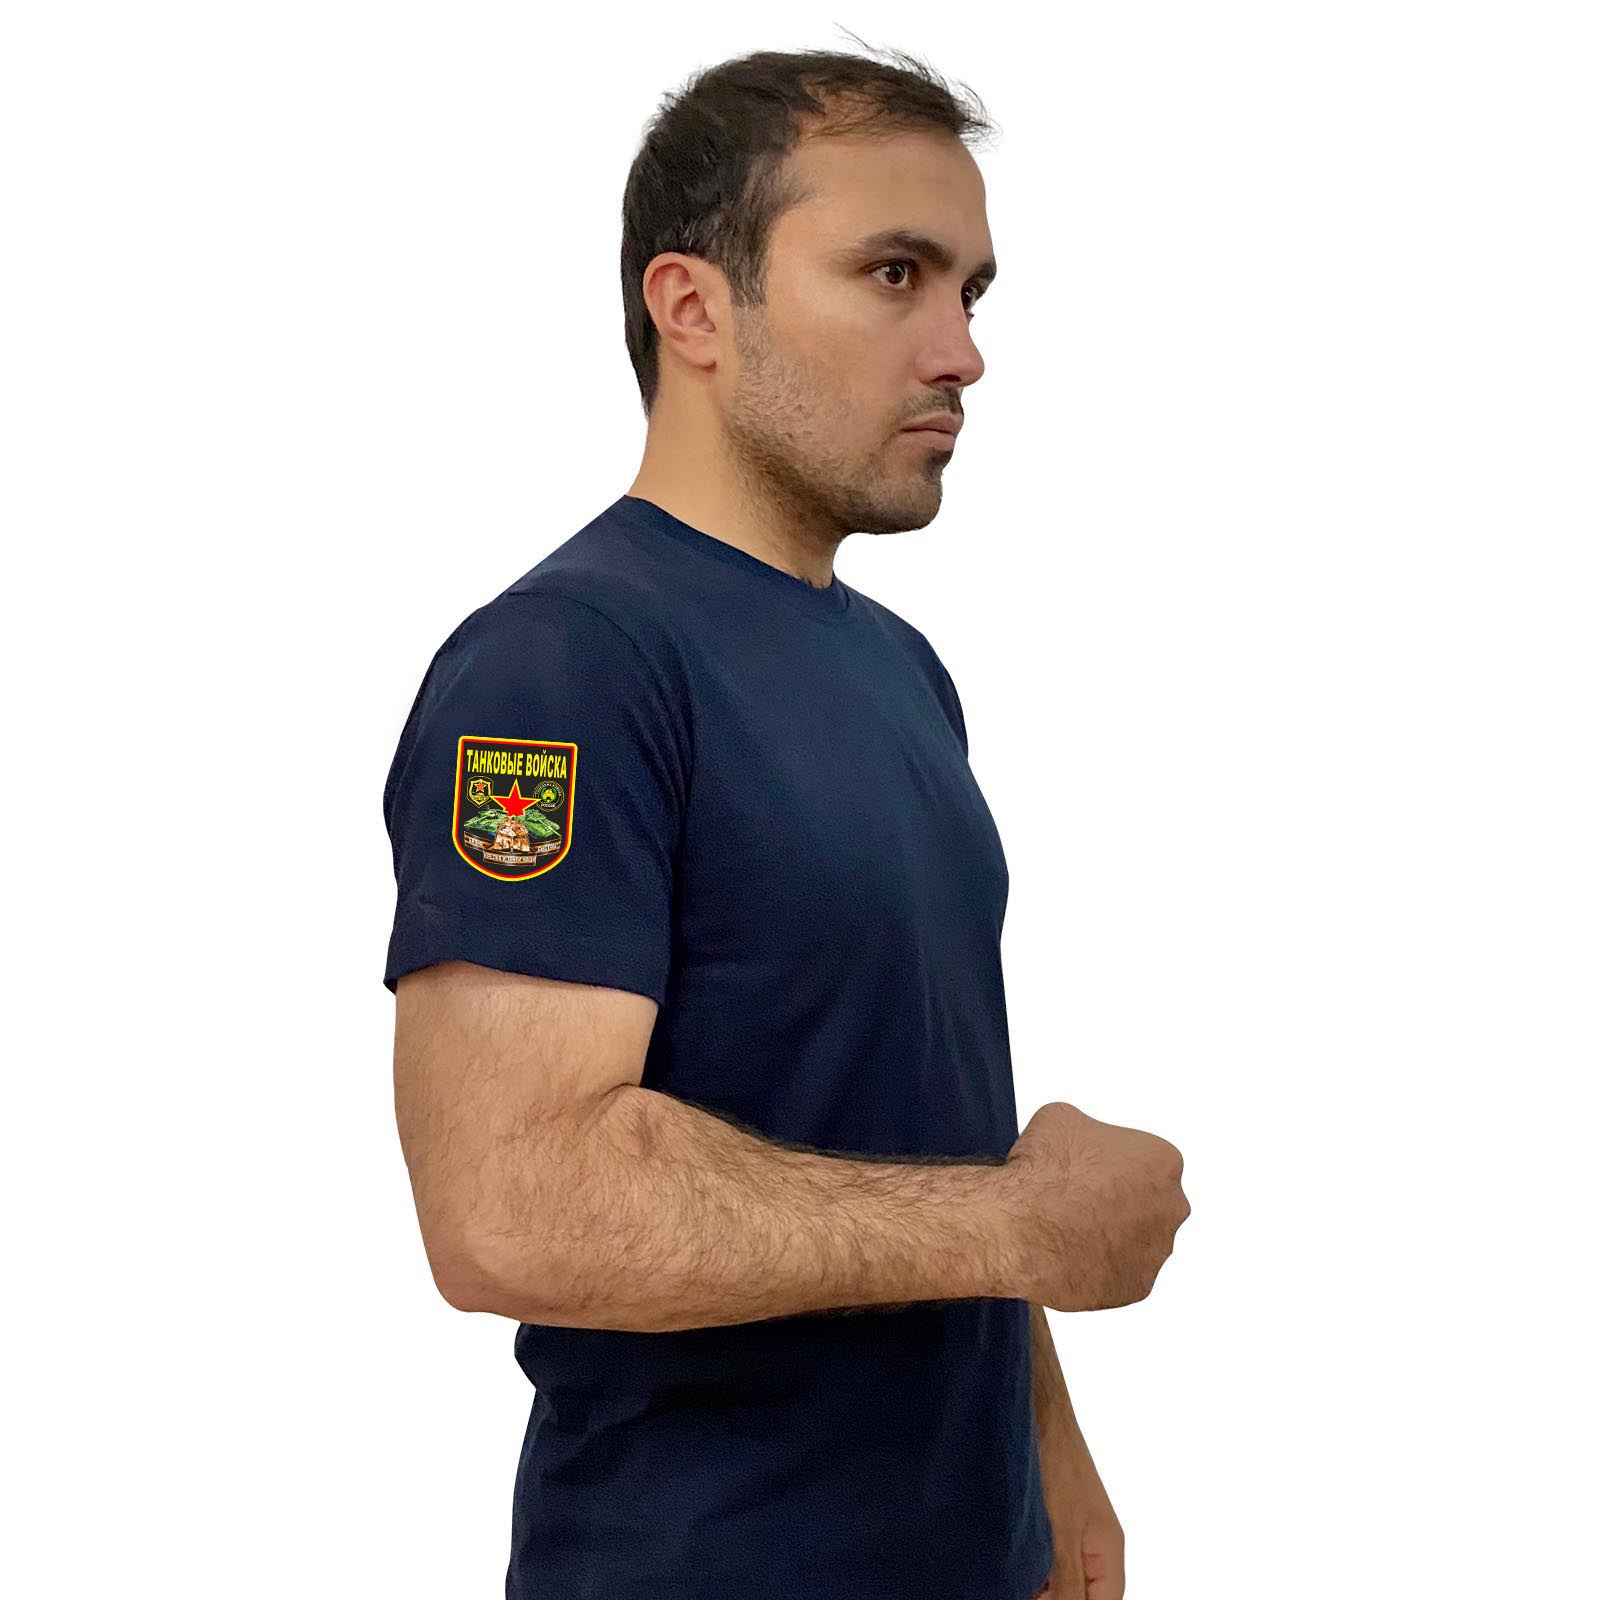 Купить темно-синюю удобную футболку с термотрансфером Танковые Войска онлайн